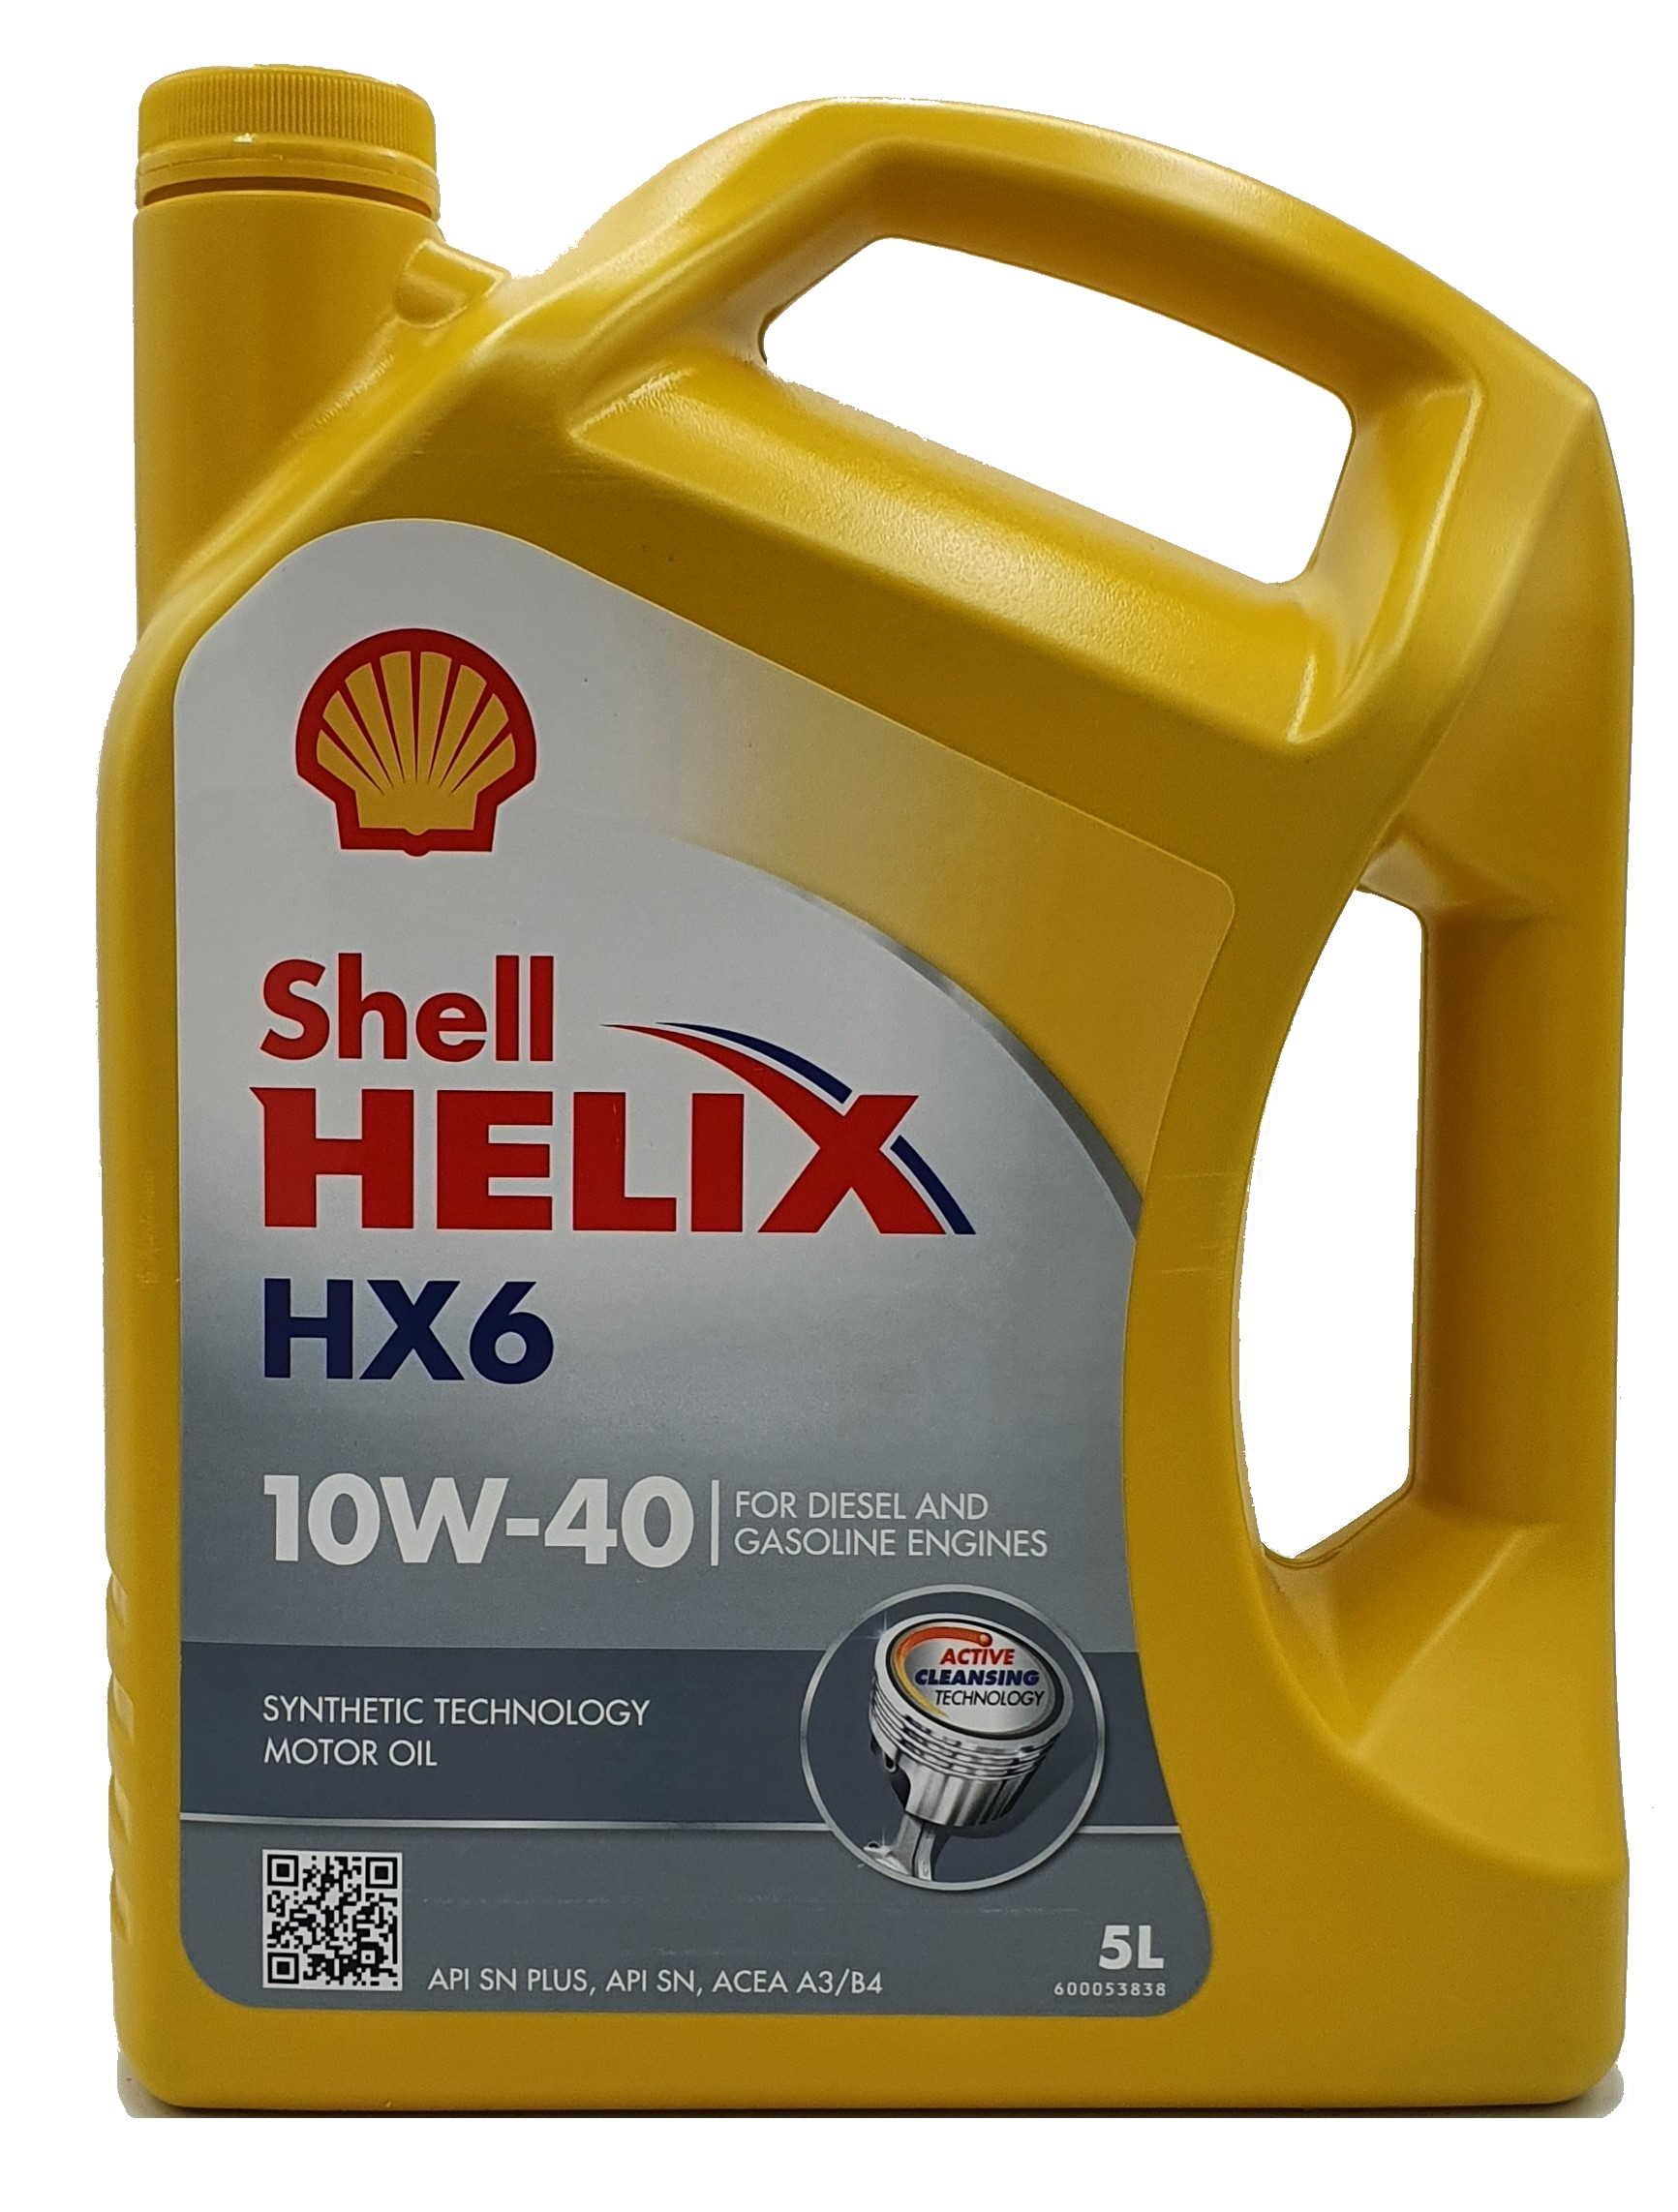 Shell Helix HX6 10W-40 5 Liter